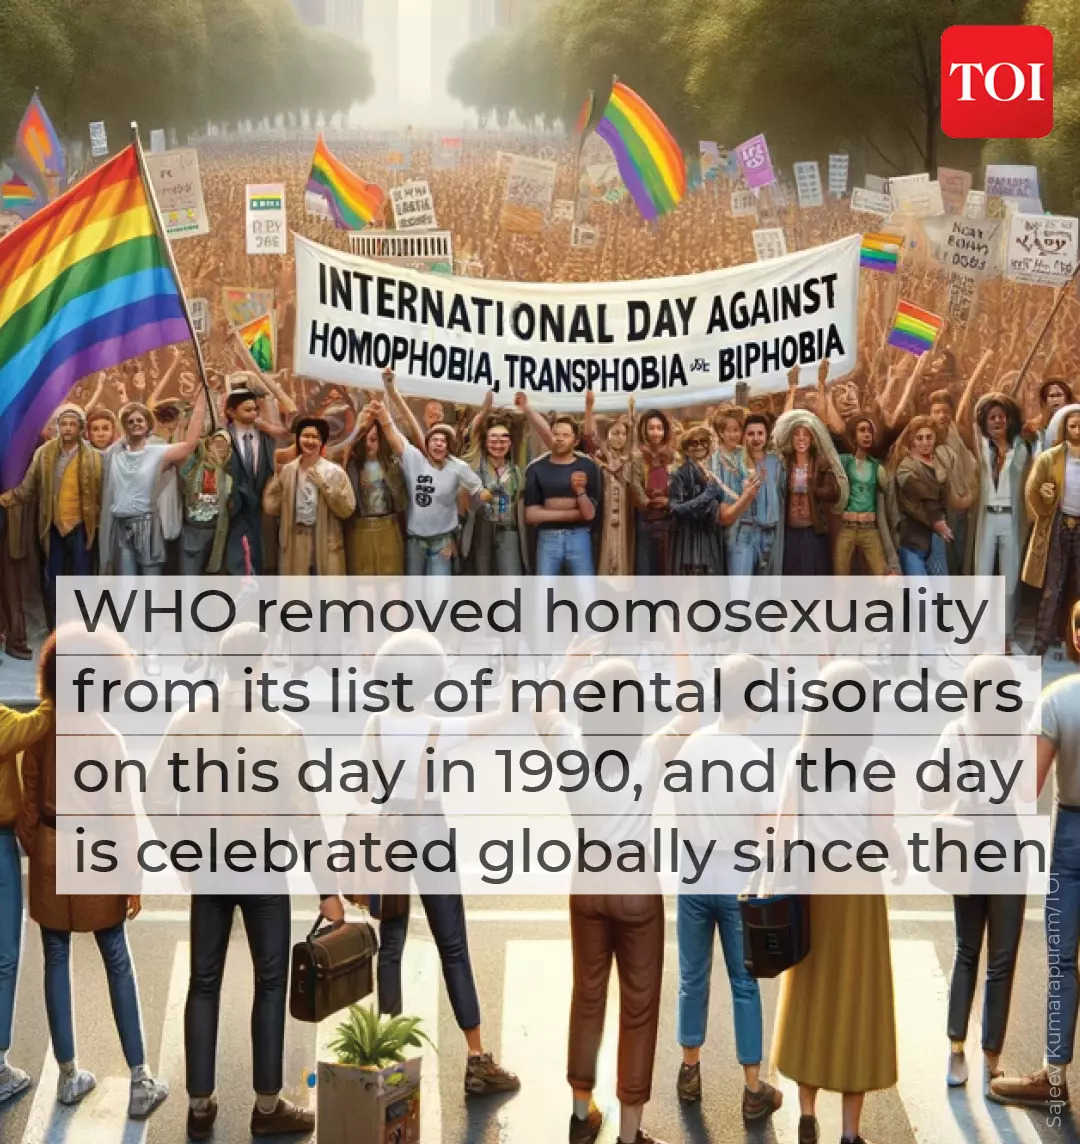 7. When WHO denounced homophobia